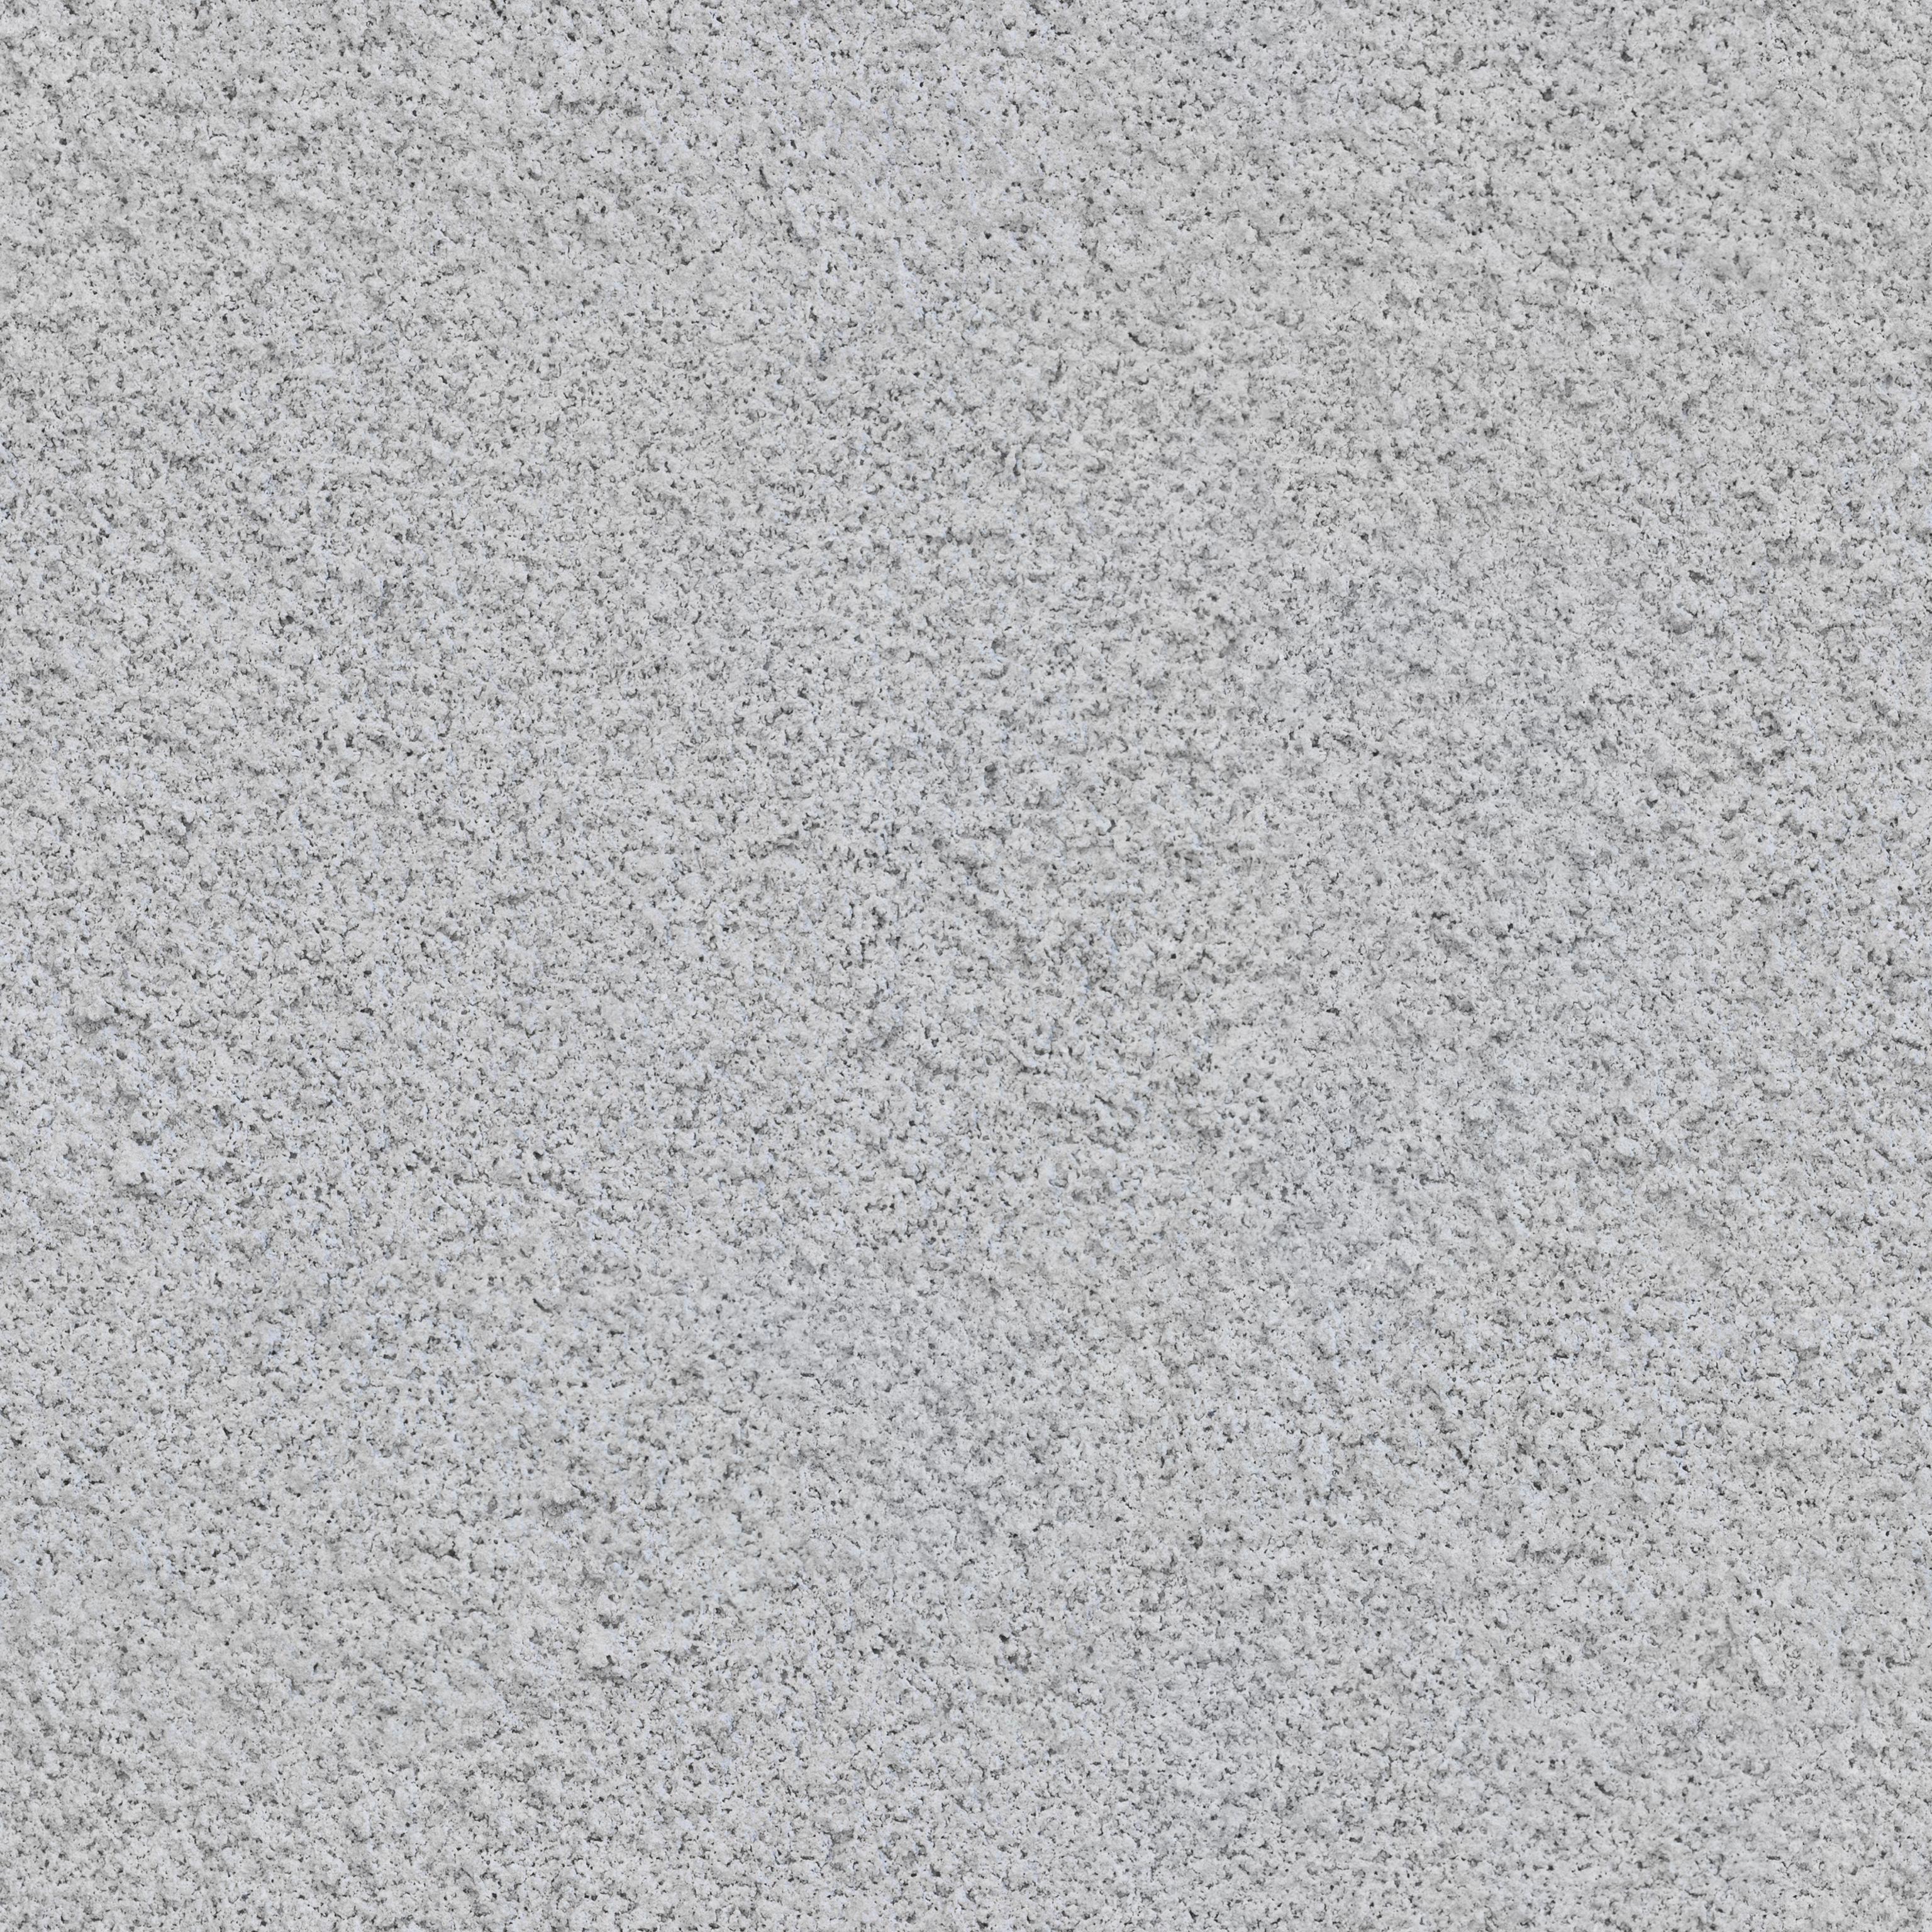 粗糙肌理漆机理墙面硅藻泥 (12)材质贴图下载-【集简空间】「每日更新」